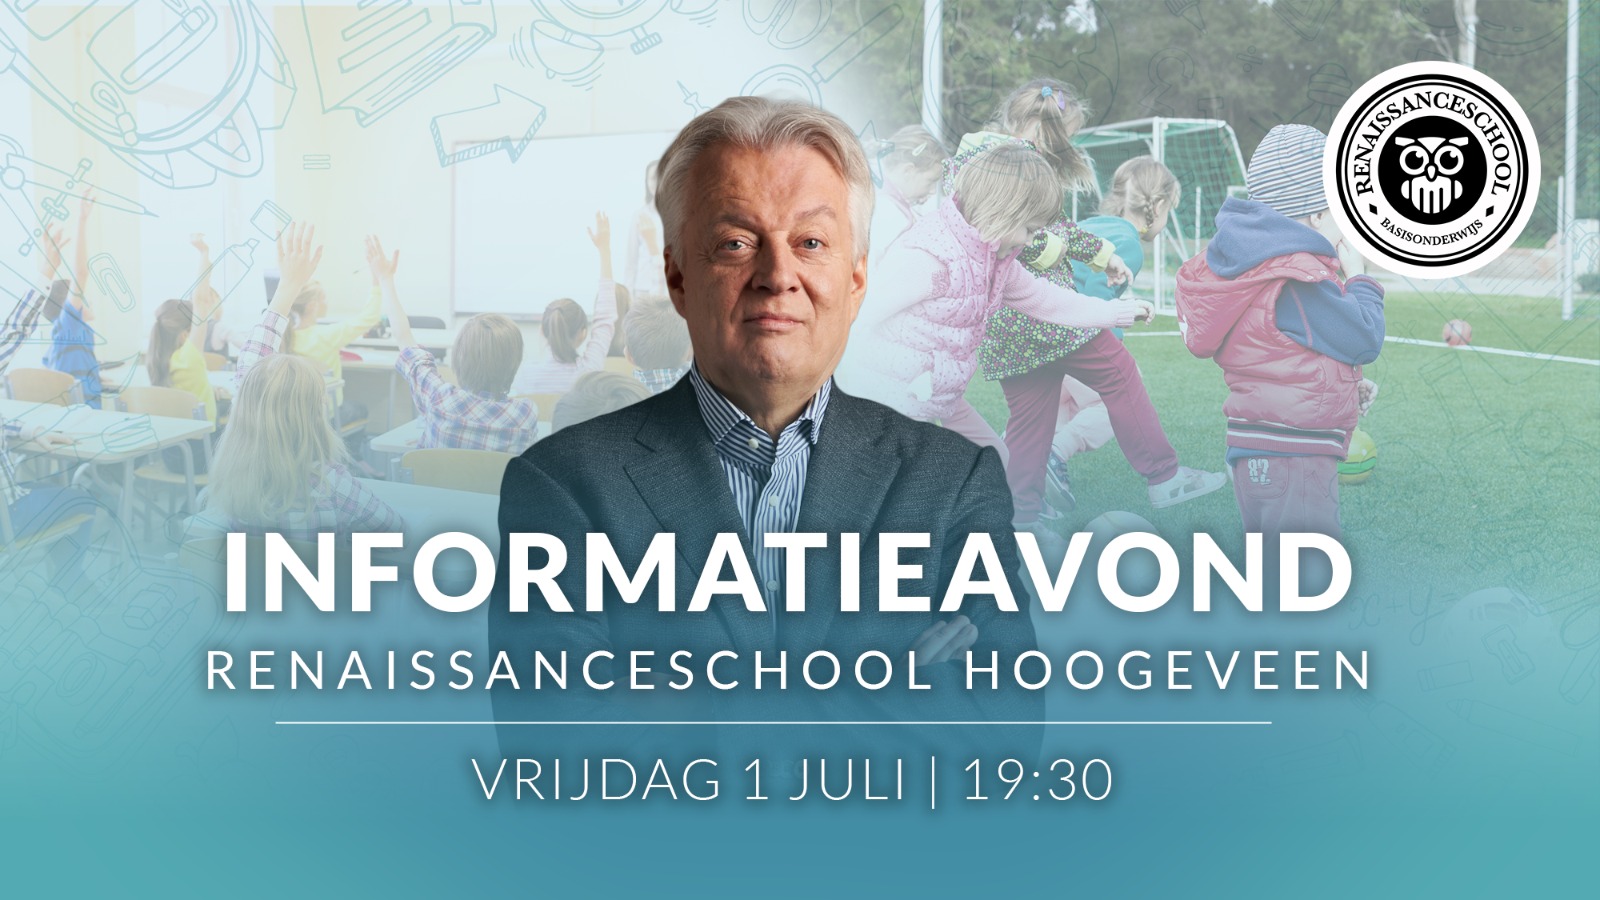 Informatieavond Renaissanceschool Hoogeveen